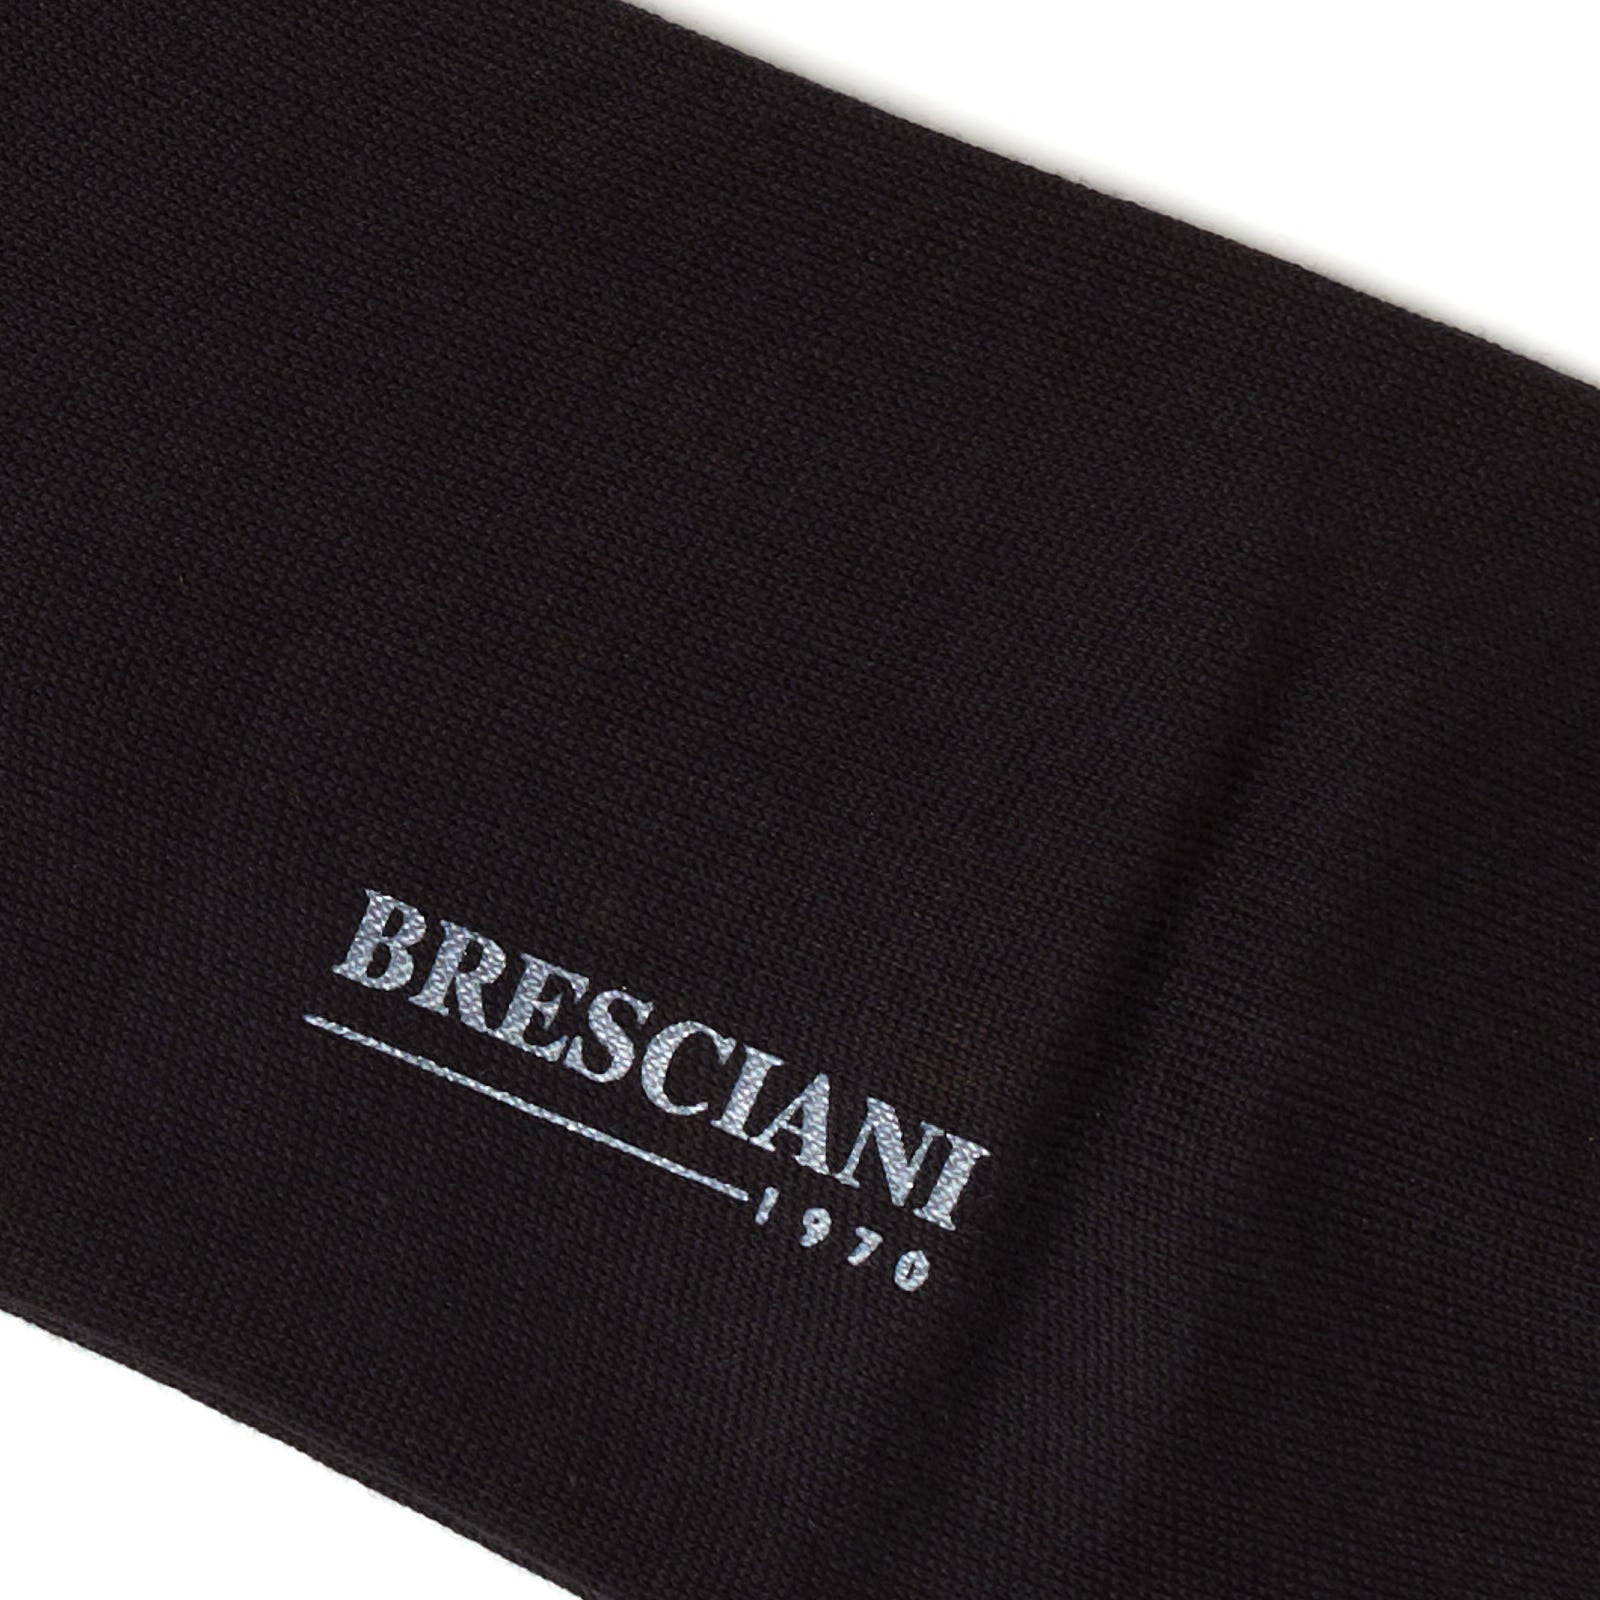 BRESCIANI Cotton-Silk Mid Calf Length Socks US M-L BRESCIANI